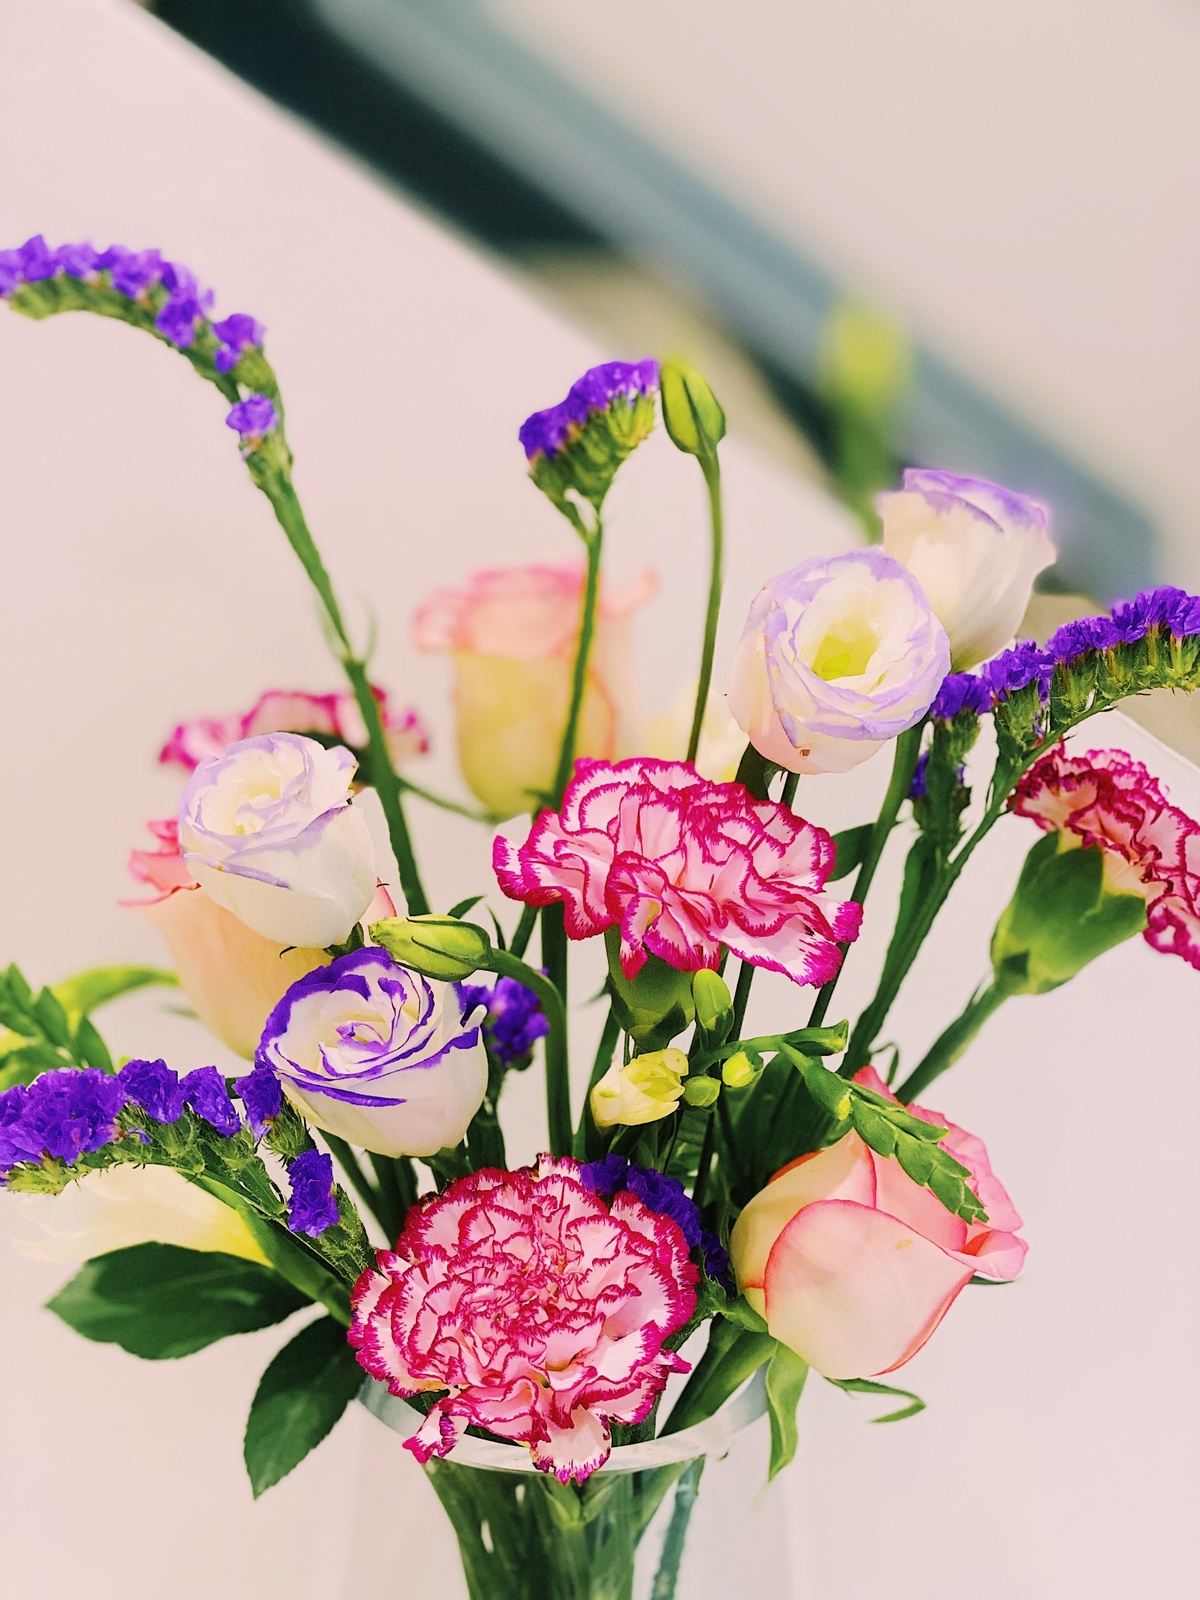 一个装满彩色花束的清晰花瓶 放在一张白色的桌子上